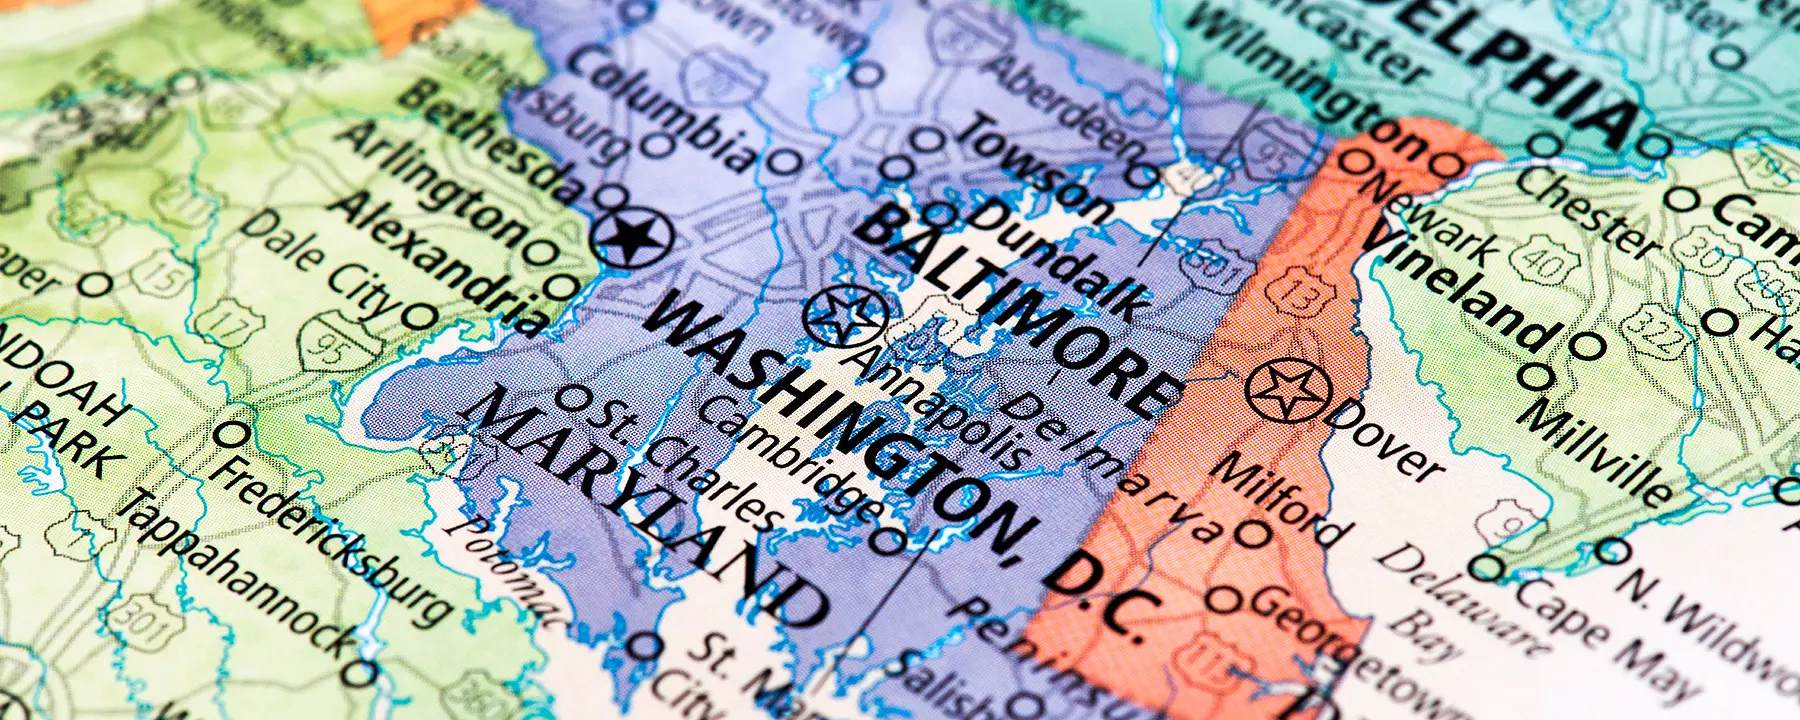 map of Washington DC